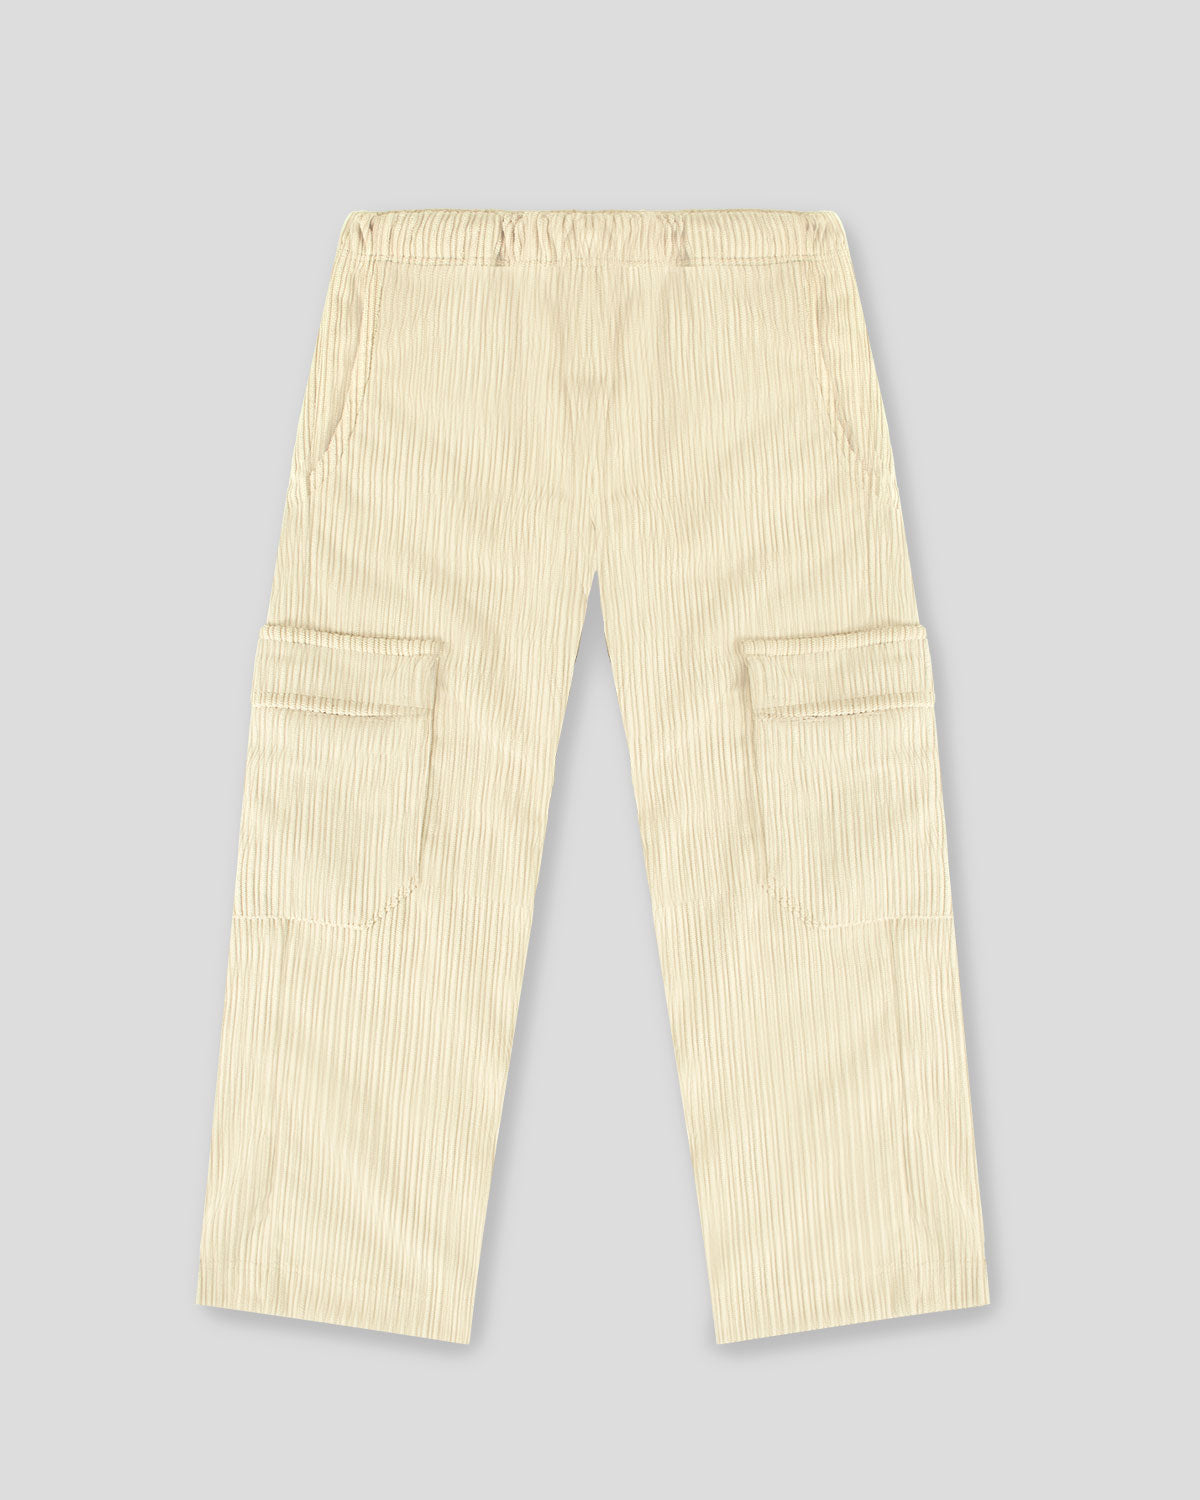 Pantalón beige tipo cargo con bolsillo para niña